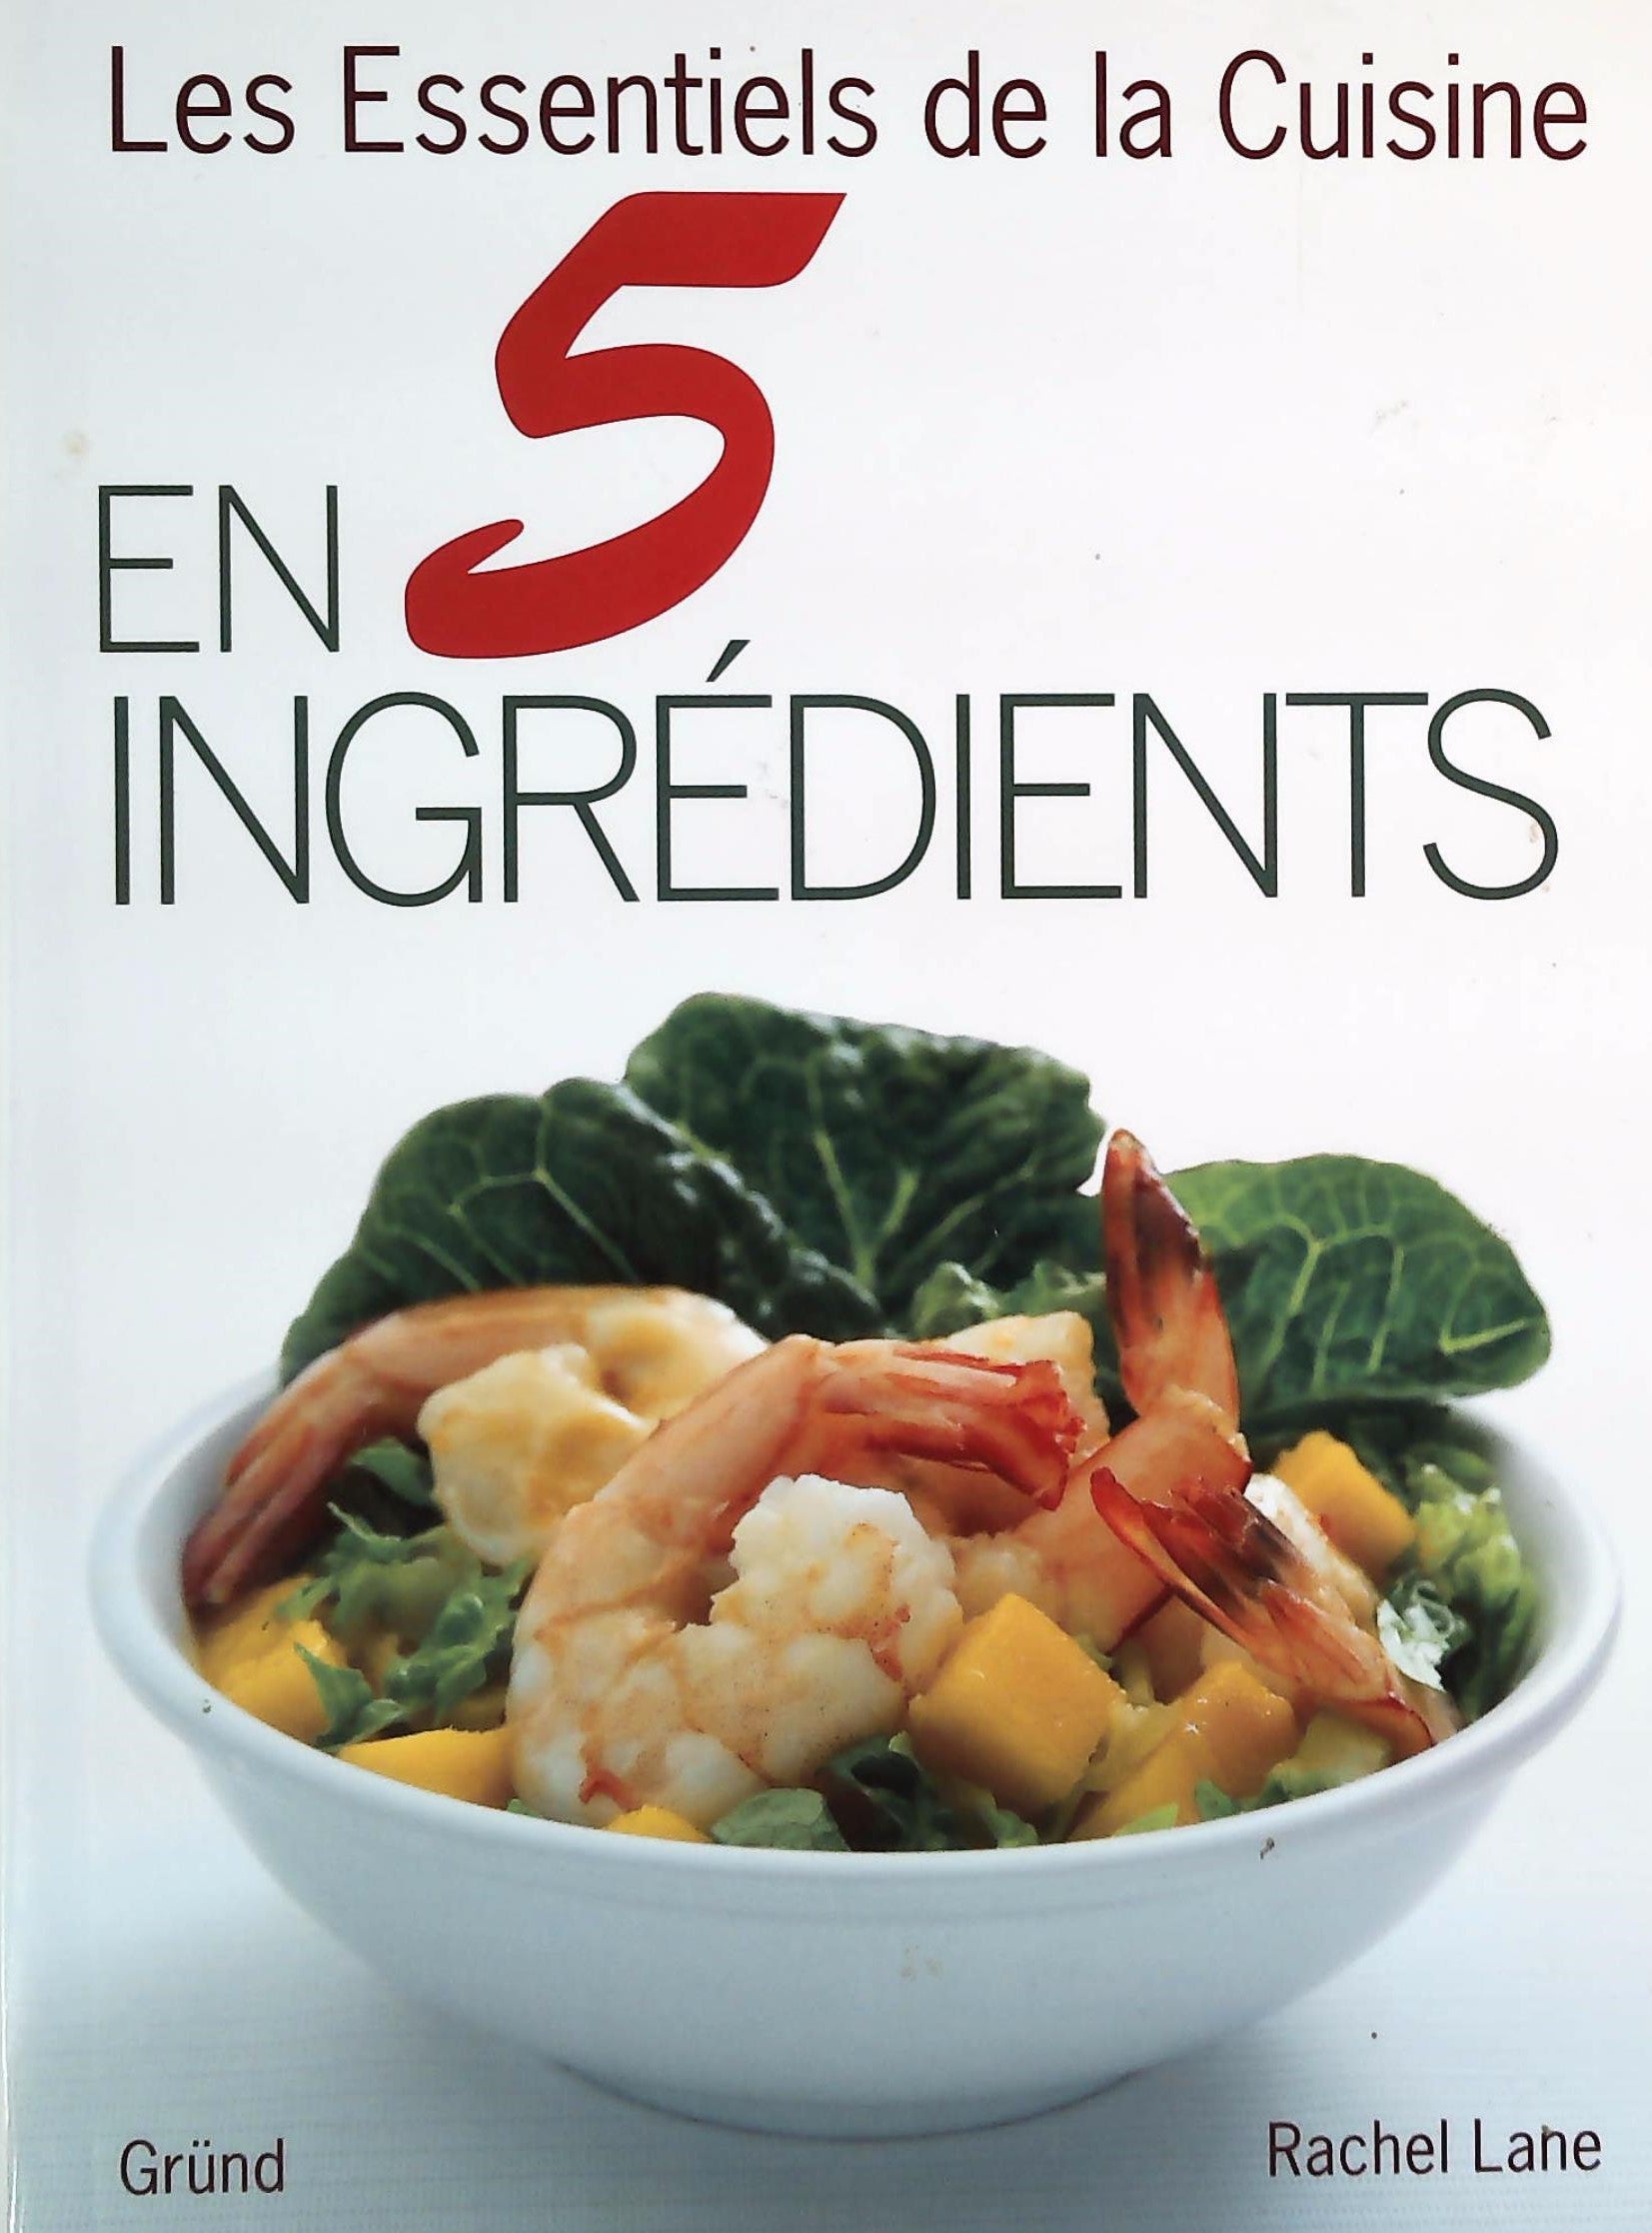 Livre ISBN 2700025938 Les essentiels de la cuisine : En 5 ingrédients (Rachel Lane)